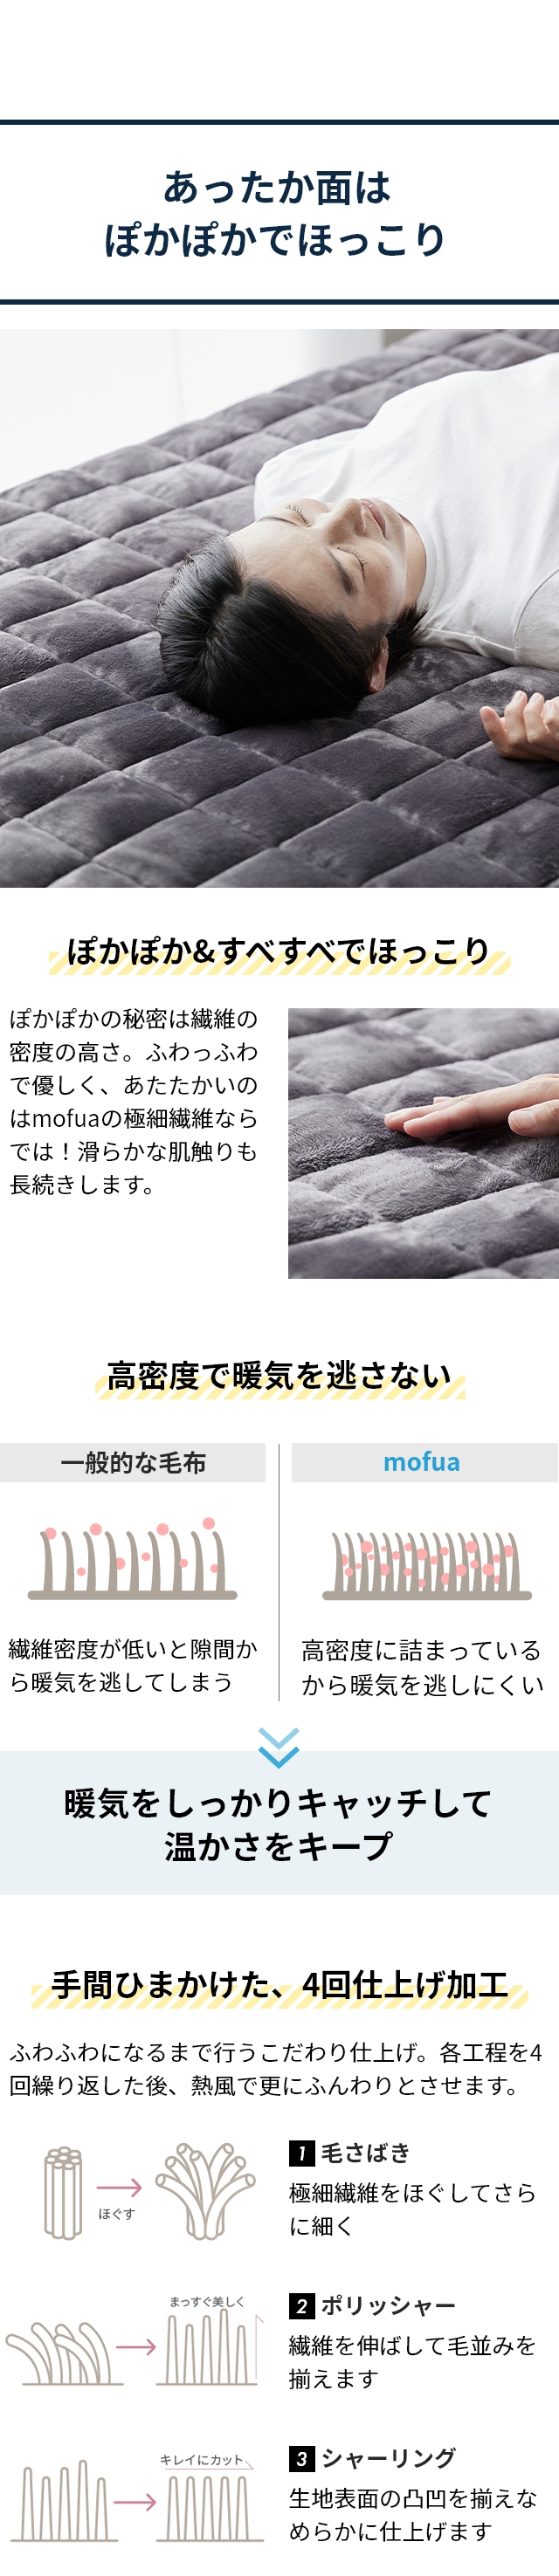 mofua (モフア) プレミアムマイクロファイバー 中綿増量ボリューム敷きパッド リバーシブル SD セミダブル